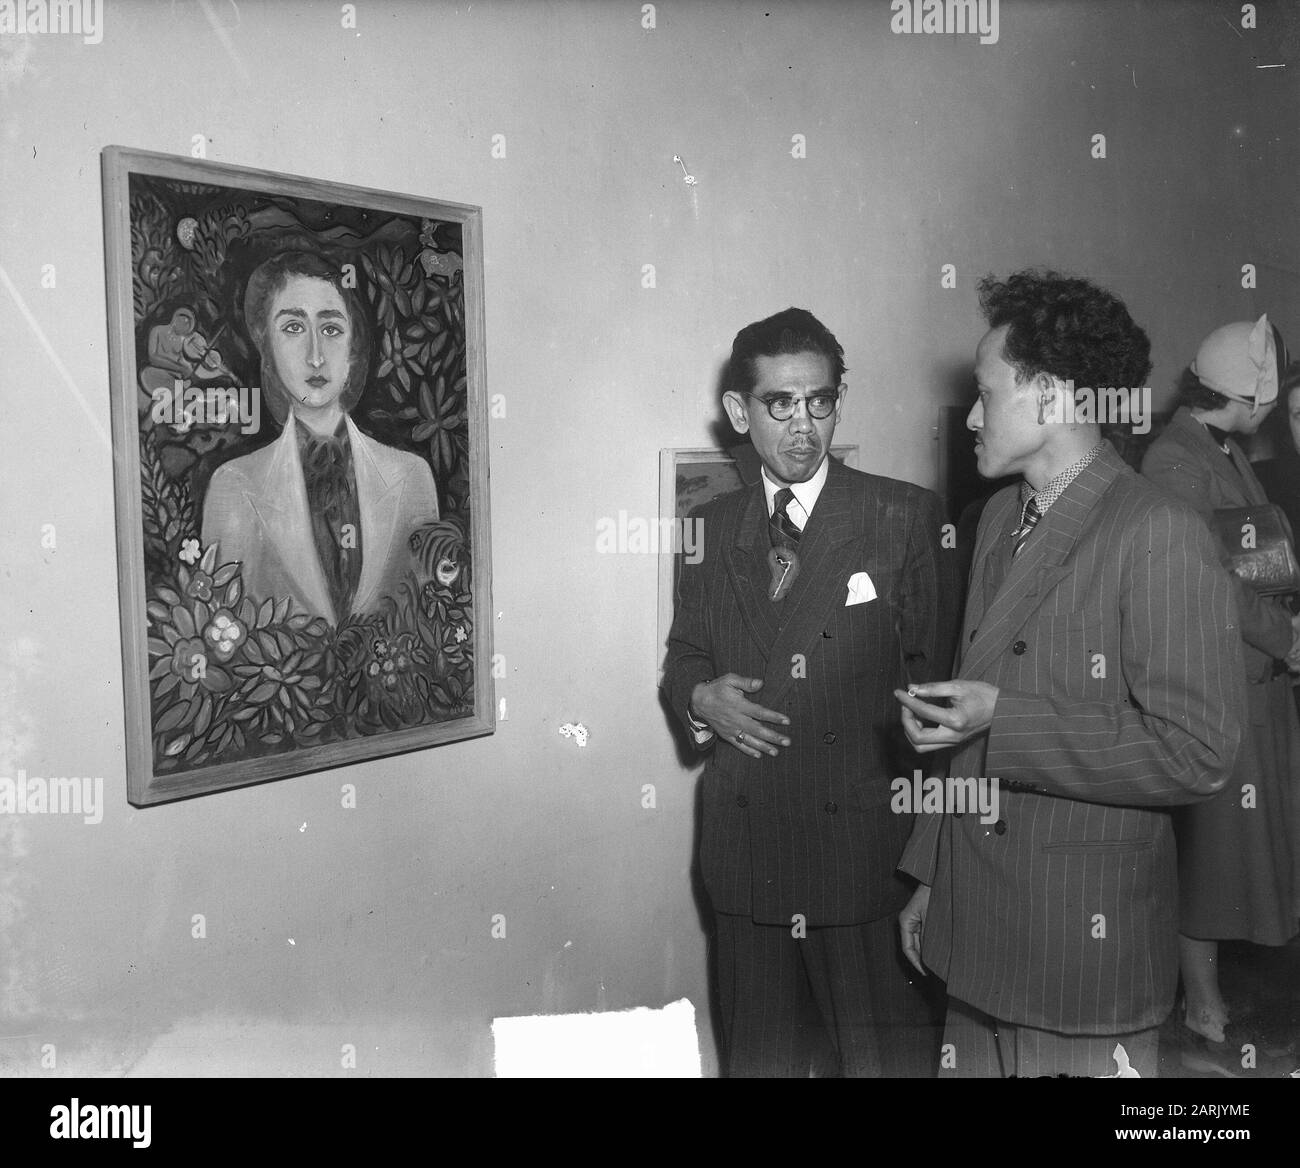 Exposición de arte indonesio en ICC Fecha: 18 de abril de 1950 palabras clave: Arte, institución de exposición Nombre: ICC Foto de stock